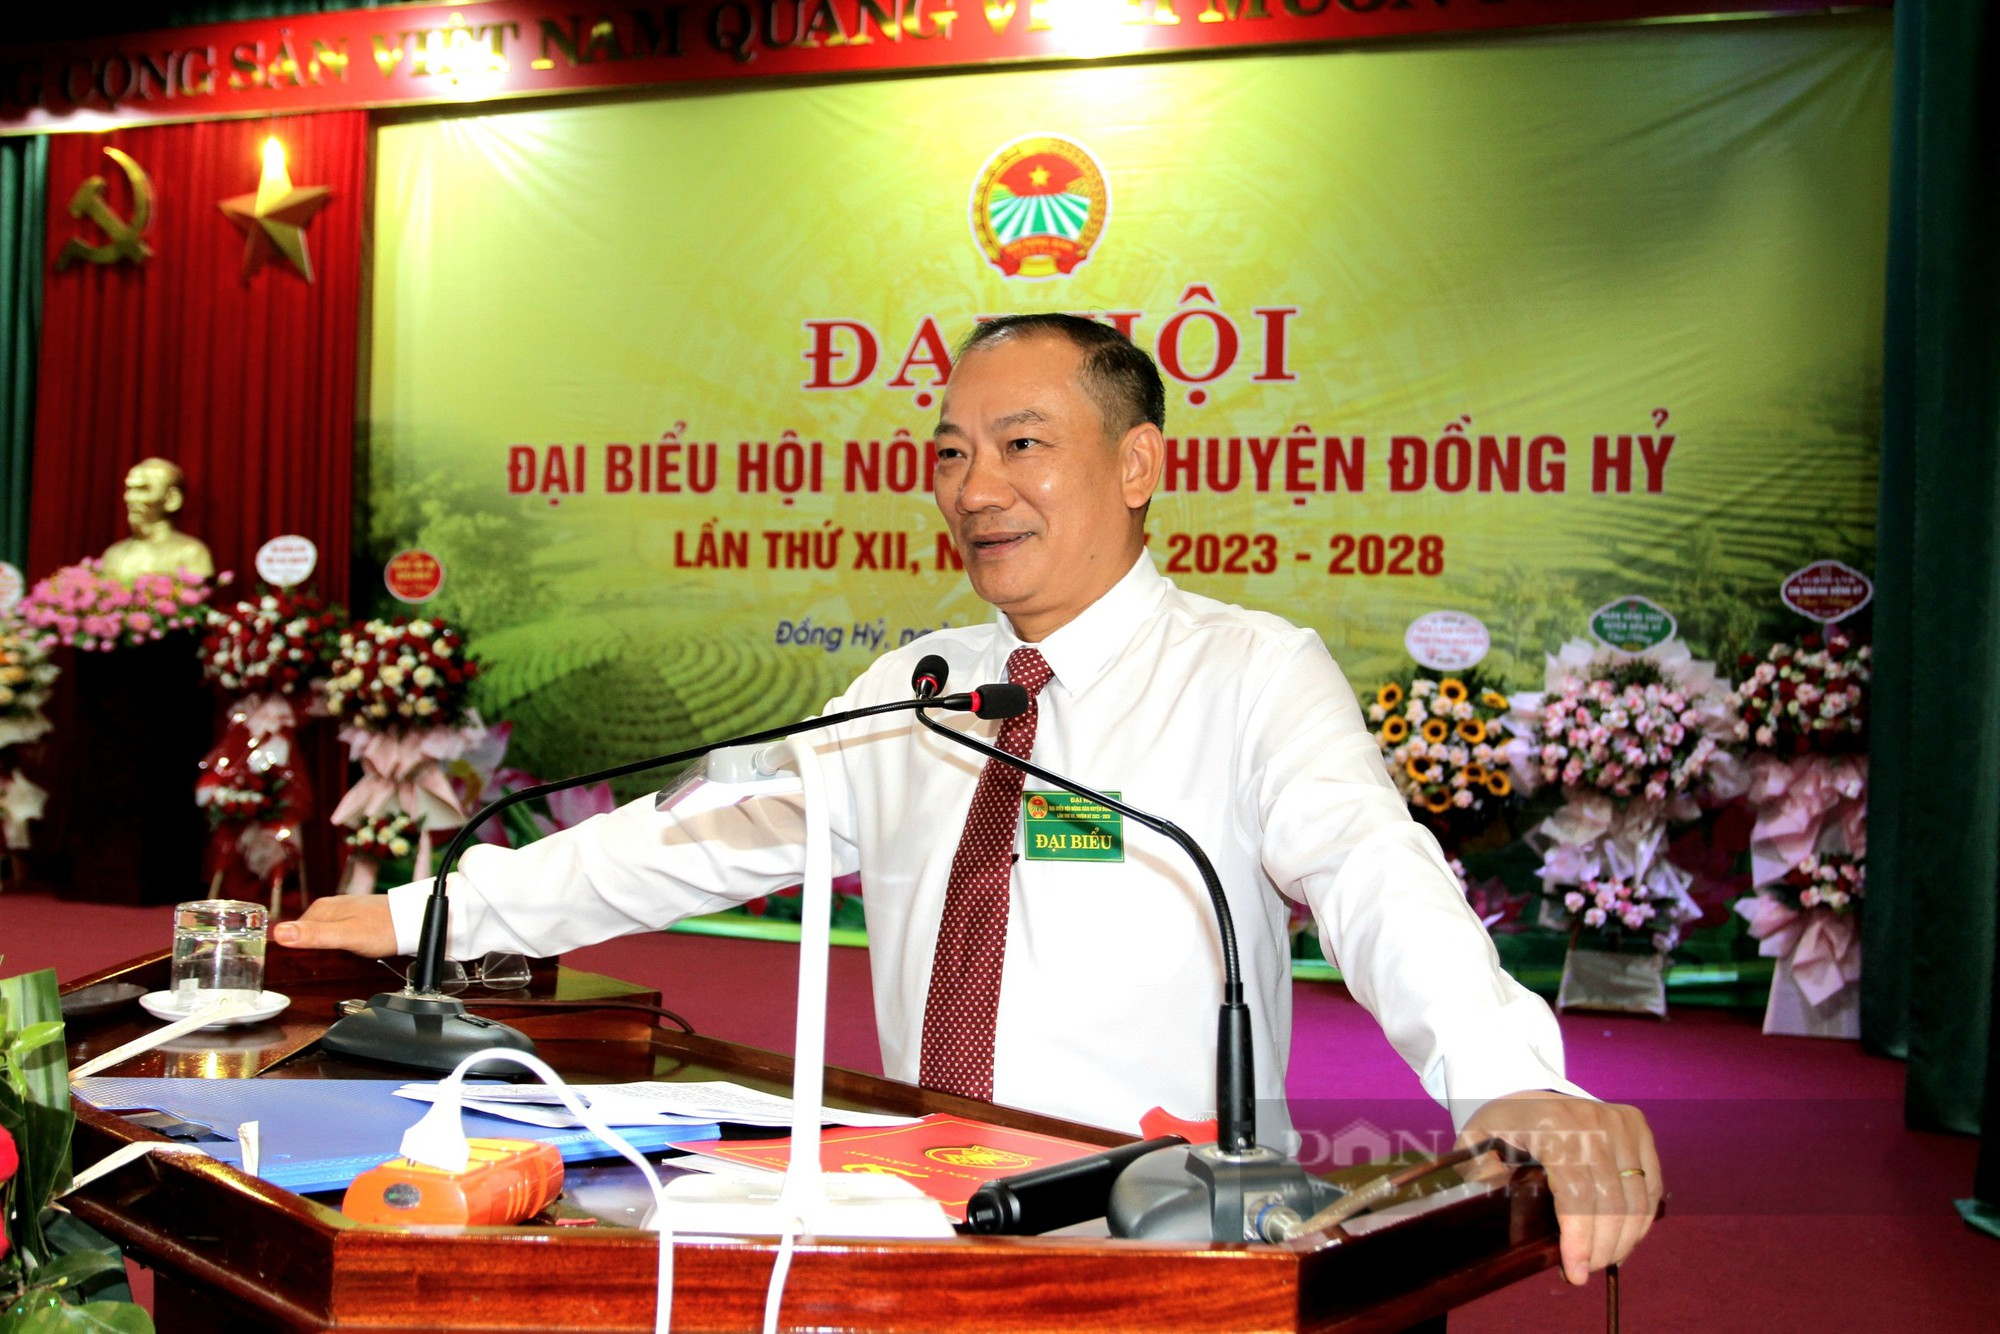 Đại hội Nông dân huyện Đồng Hỷ: Bà An Thị Hương tái đắc cử chức danh Chủ tịch  - Ảnh 4.